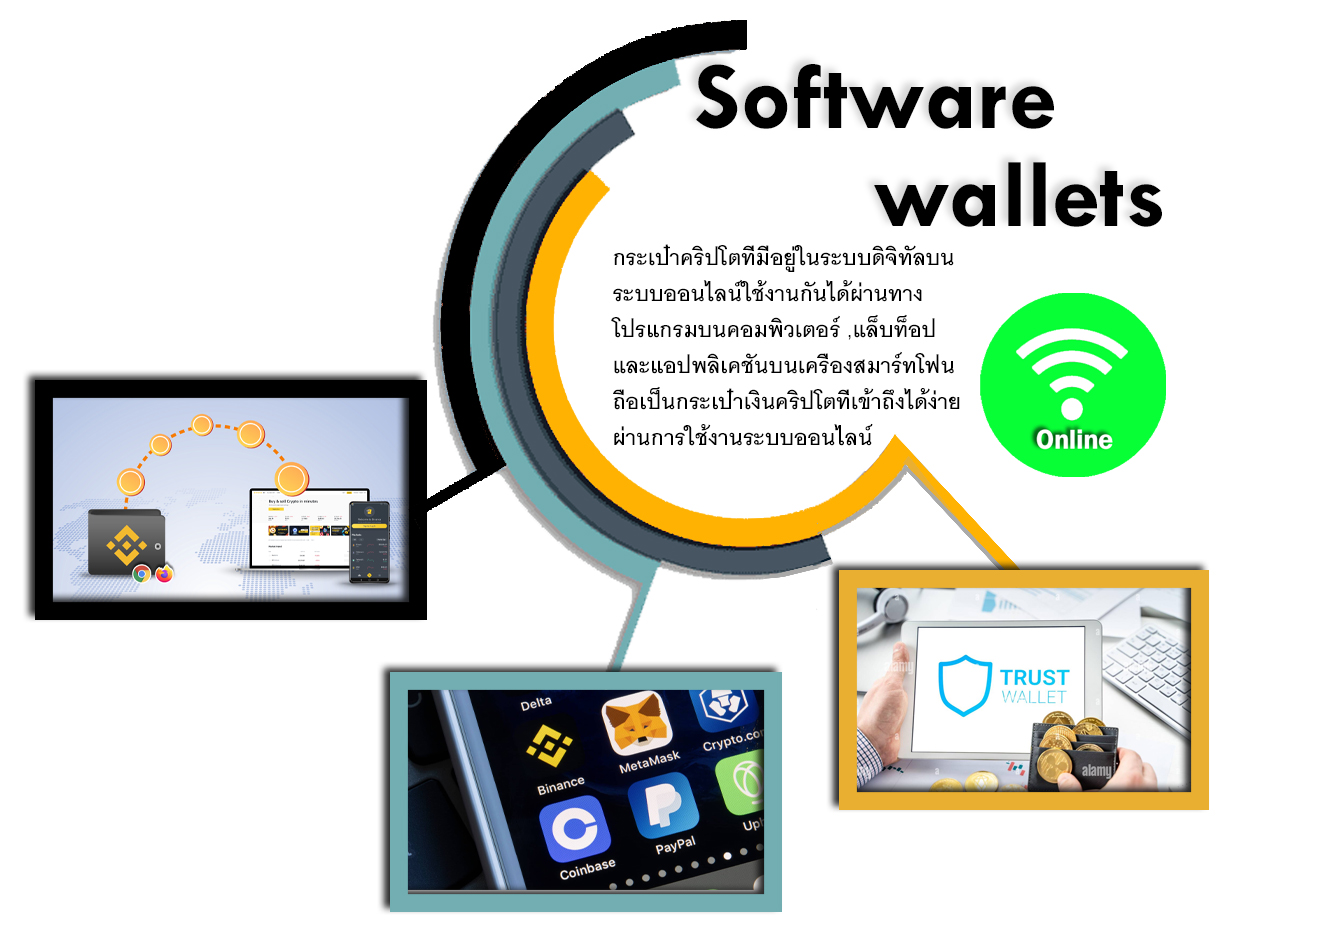 solfware wallets คือ